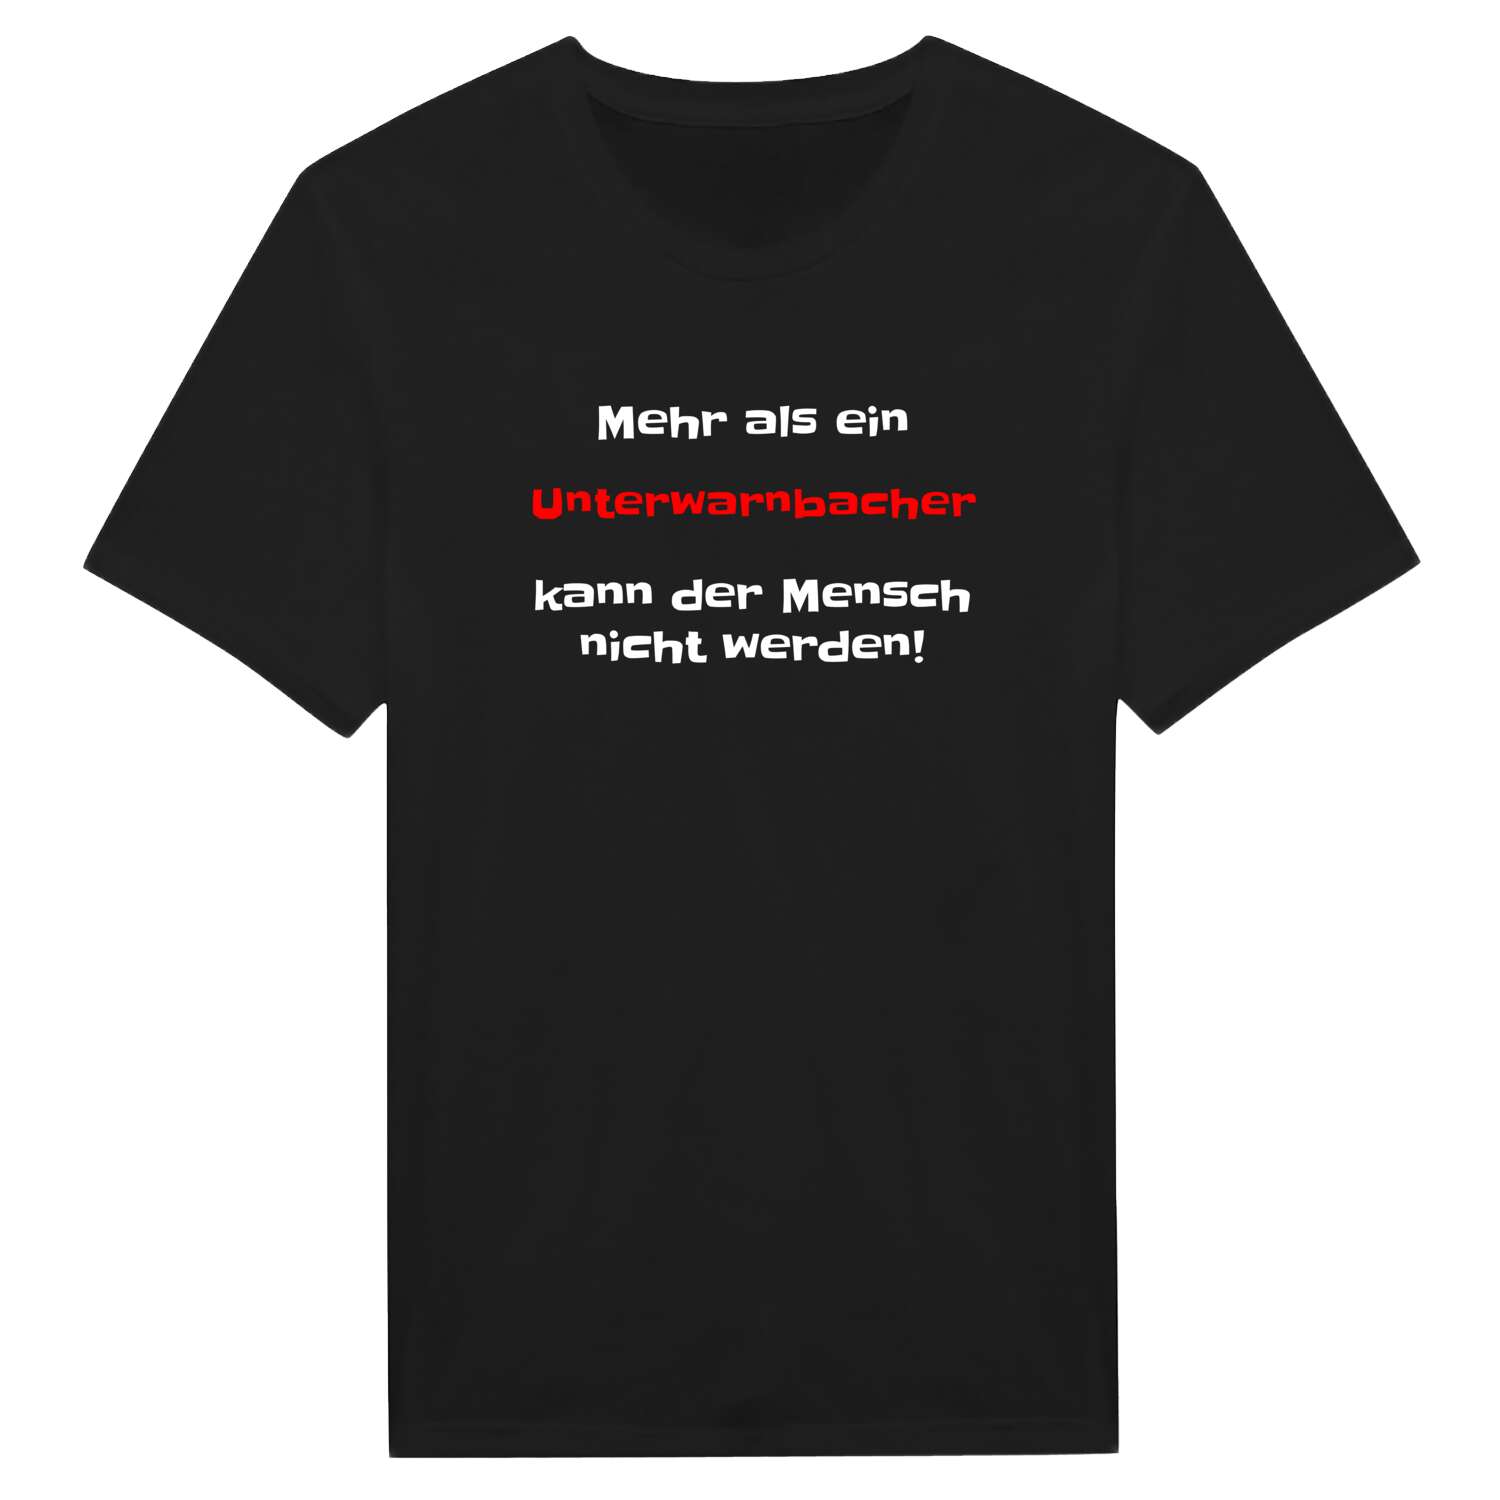 Unterwarnbach T-Shirt »Mehr als ein«